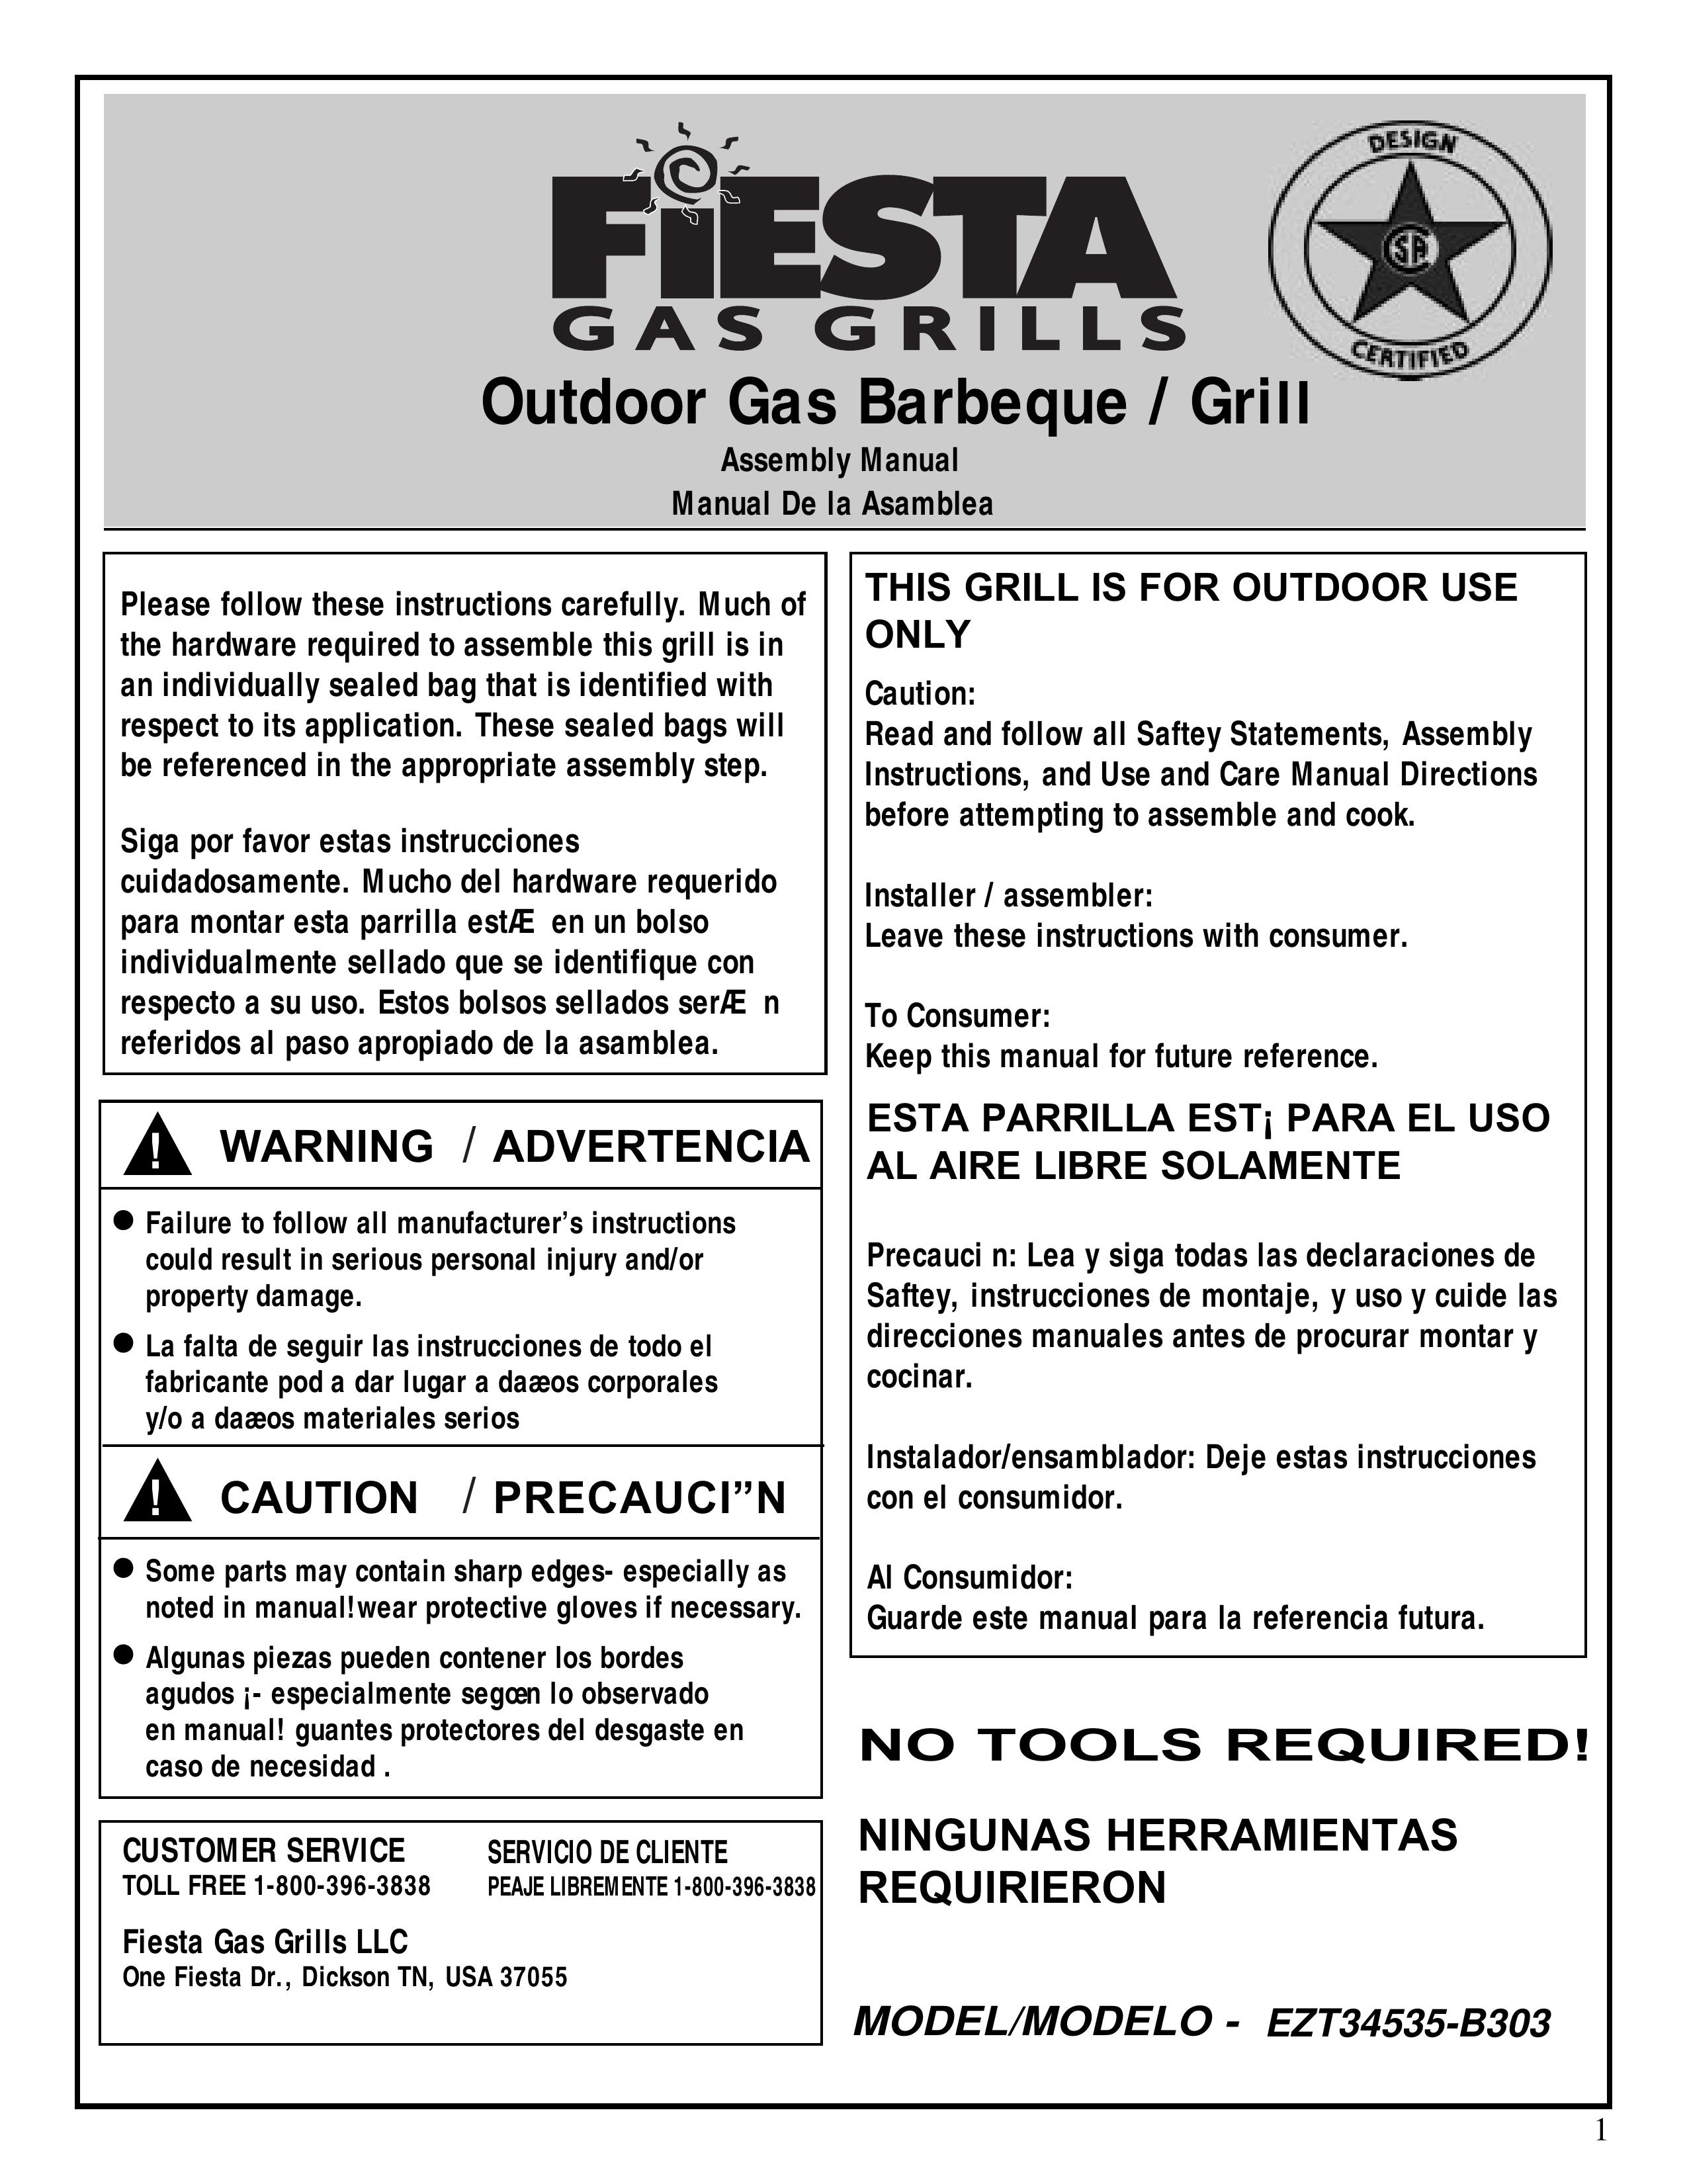 Fiesta EZT34535-B303 Gas Grill User Manual